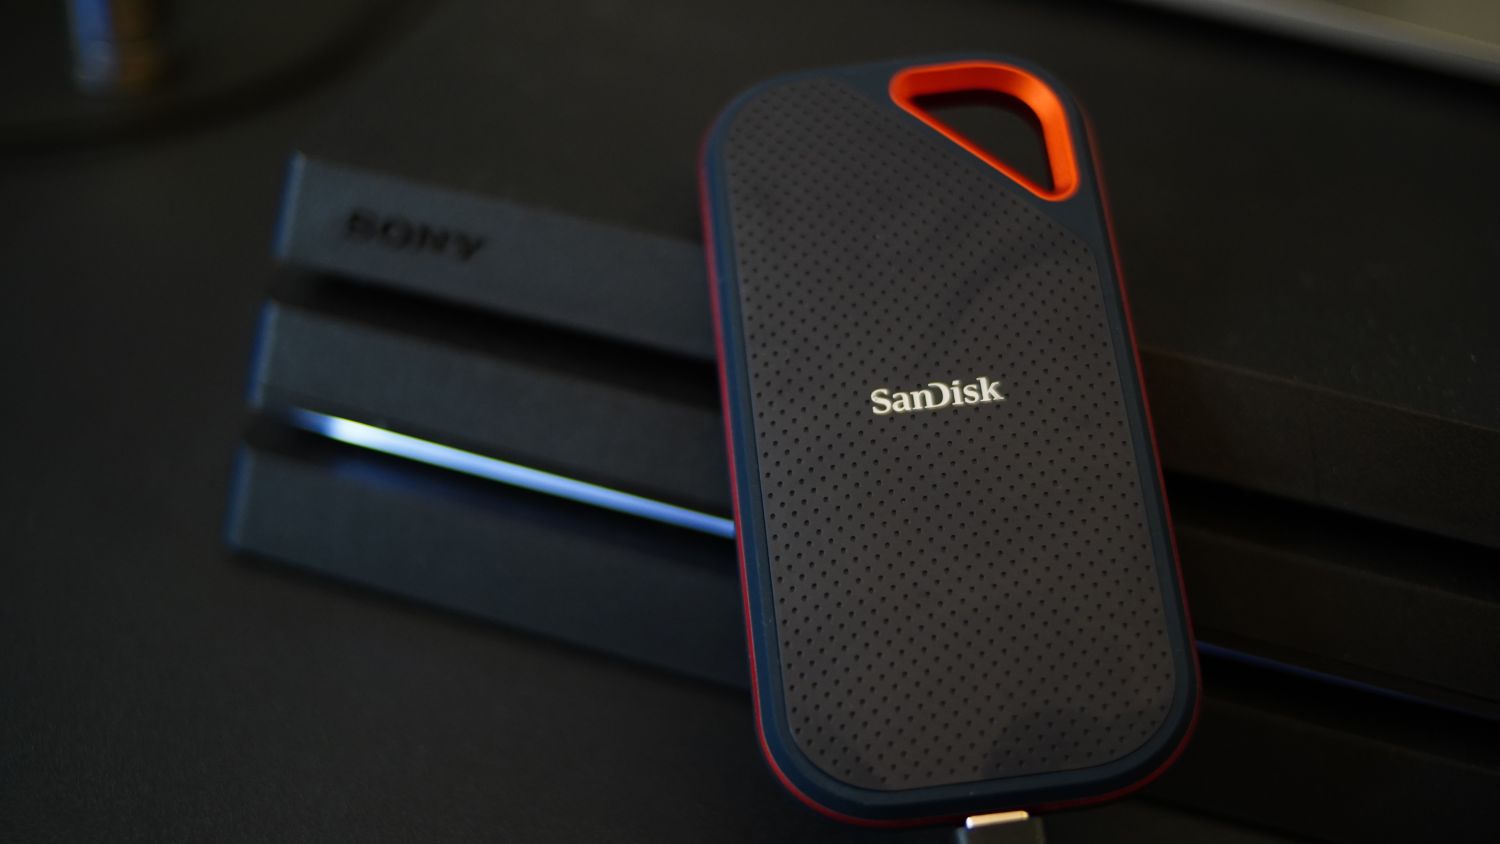 Ssd sandisk pro. SANDISK extreme Portable 1tb. SANDISK extreme Pro 1tb. SANDISK extreme Pro SSD. SANDISK extreme Pro SSD Portable.